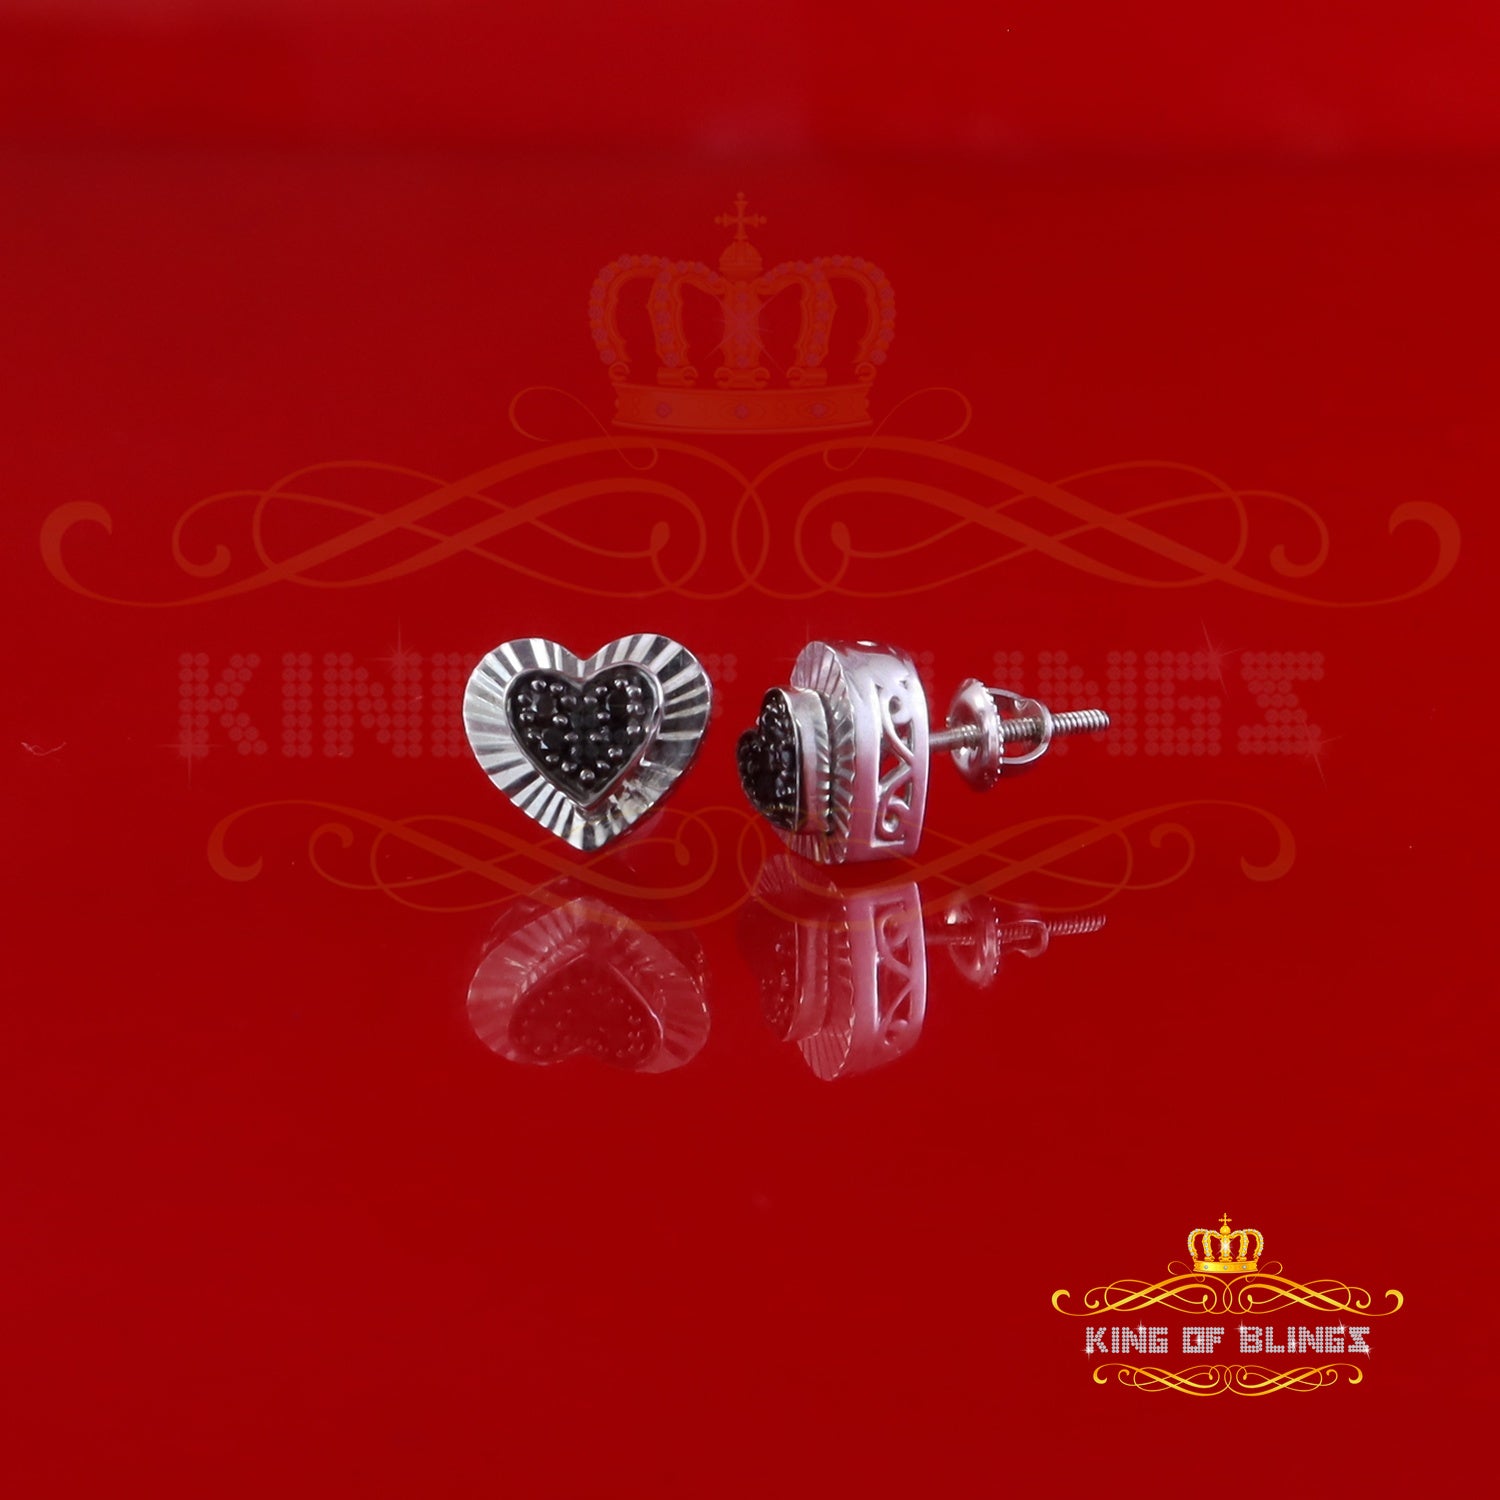 King Of Bling's Heart 925 White Silver 0.12ct Black Diamond Women's /Men's Fashion Earrings KING OF BLINGS